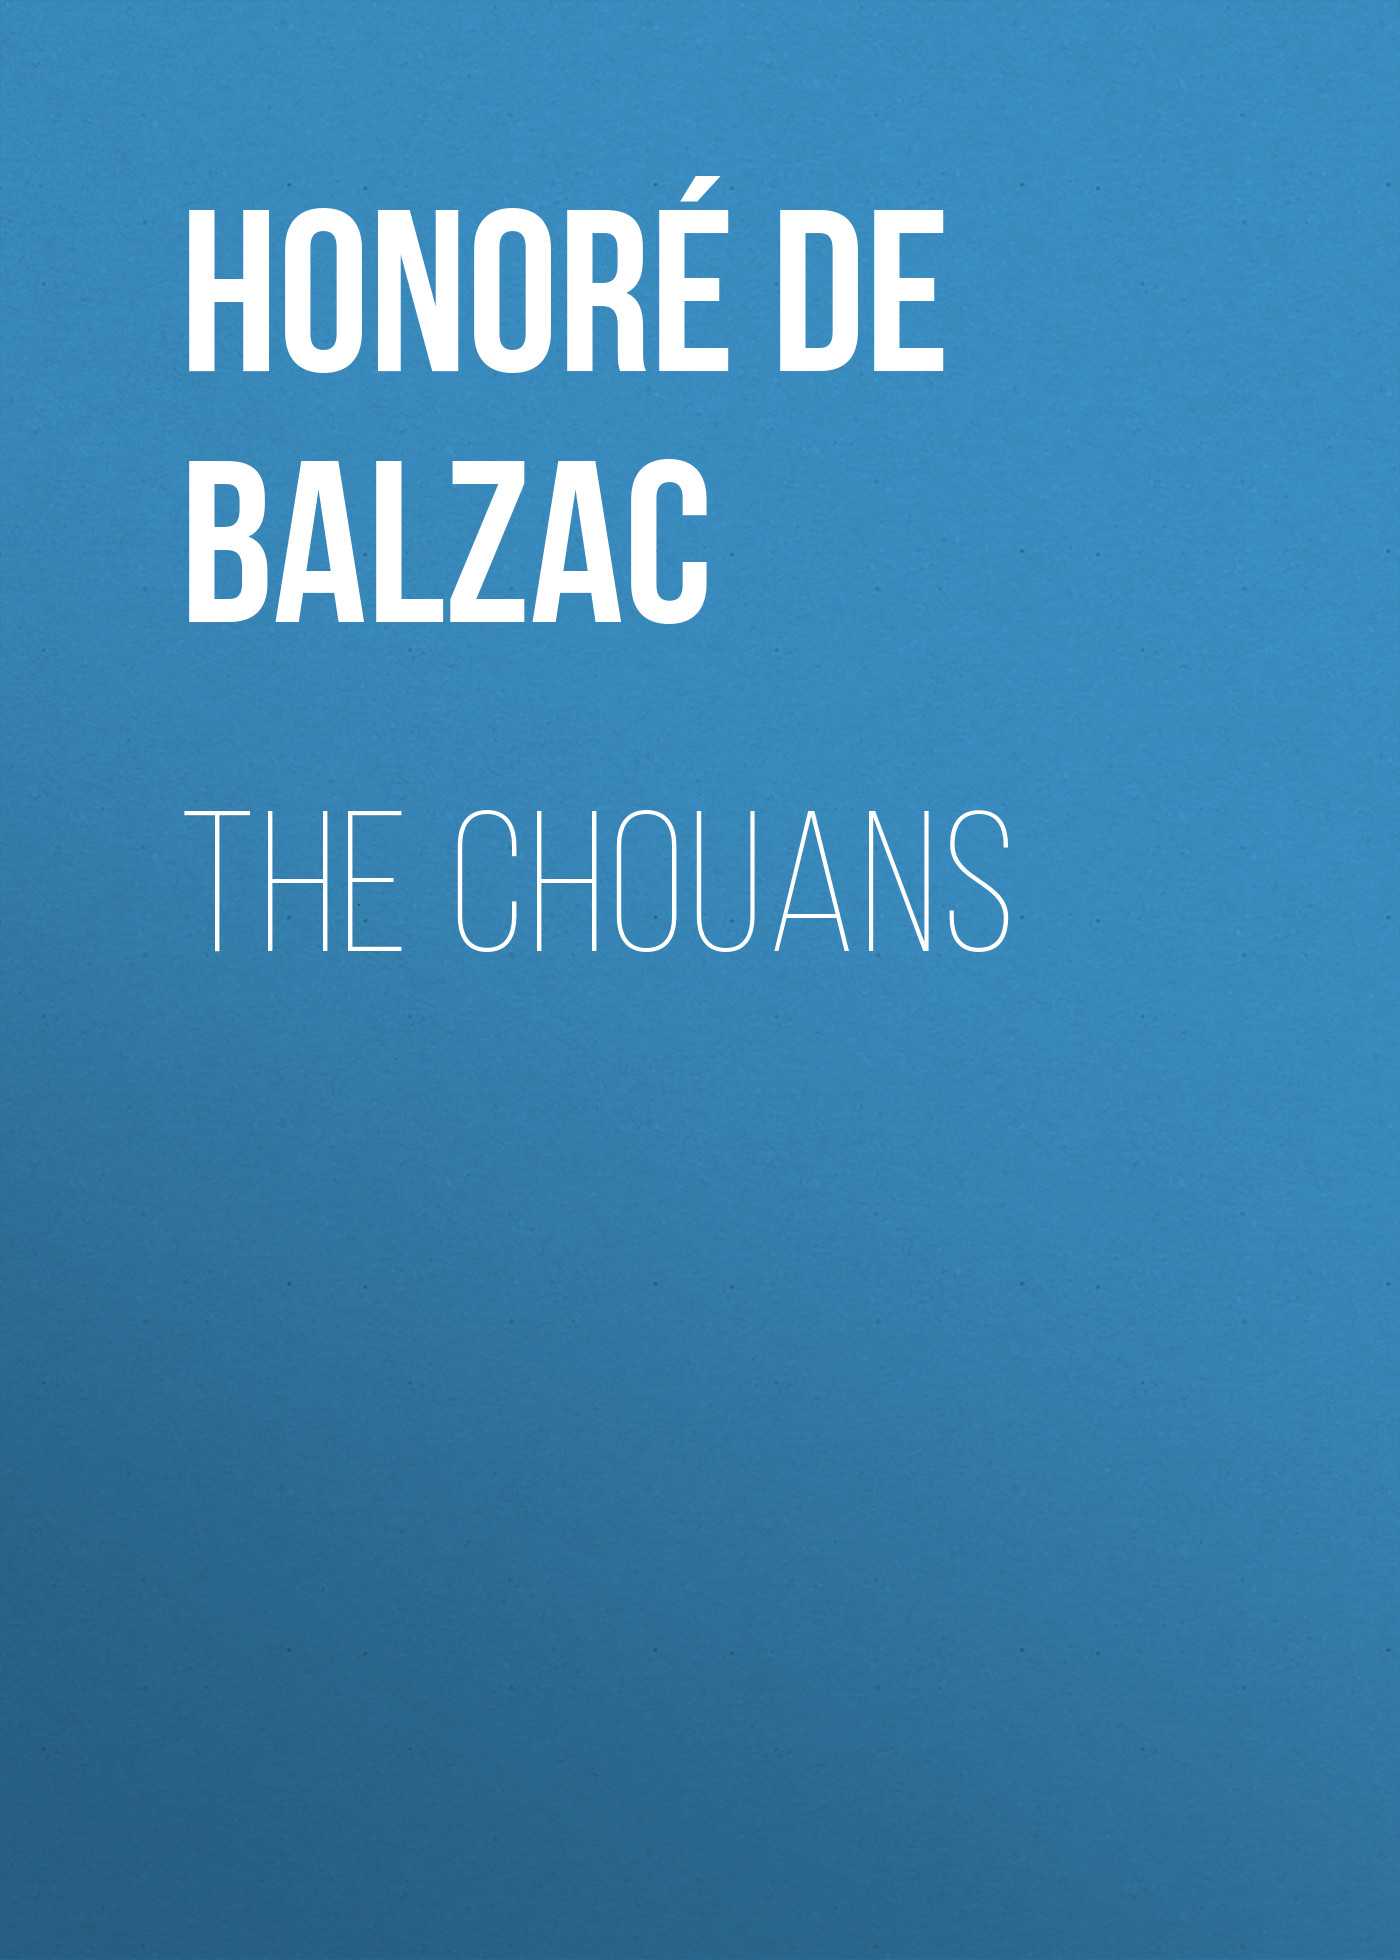 Книга The Chouans из серии , созданная Honoré Balzac, может относится к жанру Литература 19 века, Зарубежная старинная литература, Зарубежная классика. Стоимость электронной книги The Chouans с идентификатором 25020627 составляет 0 руб.